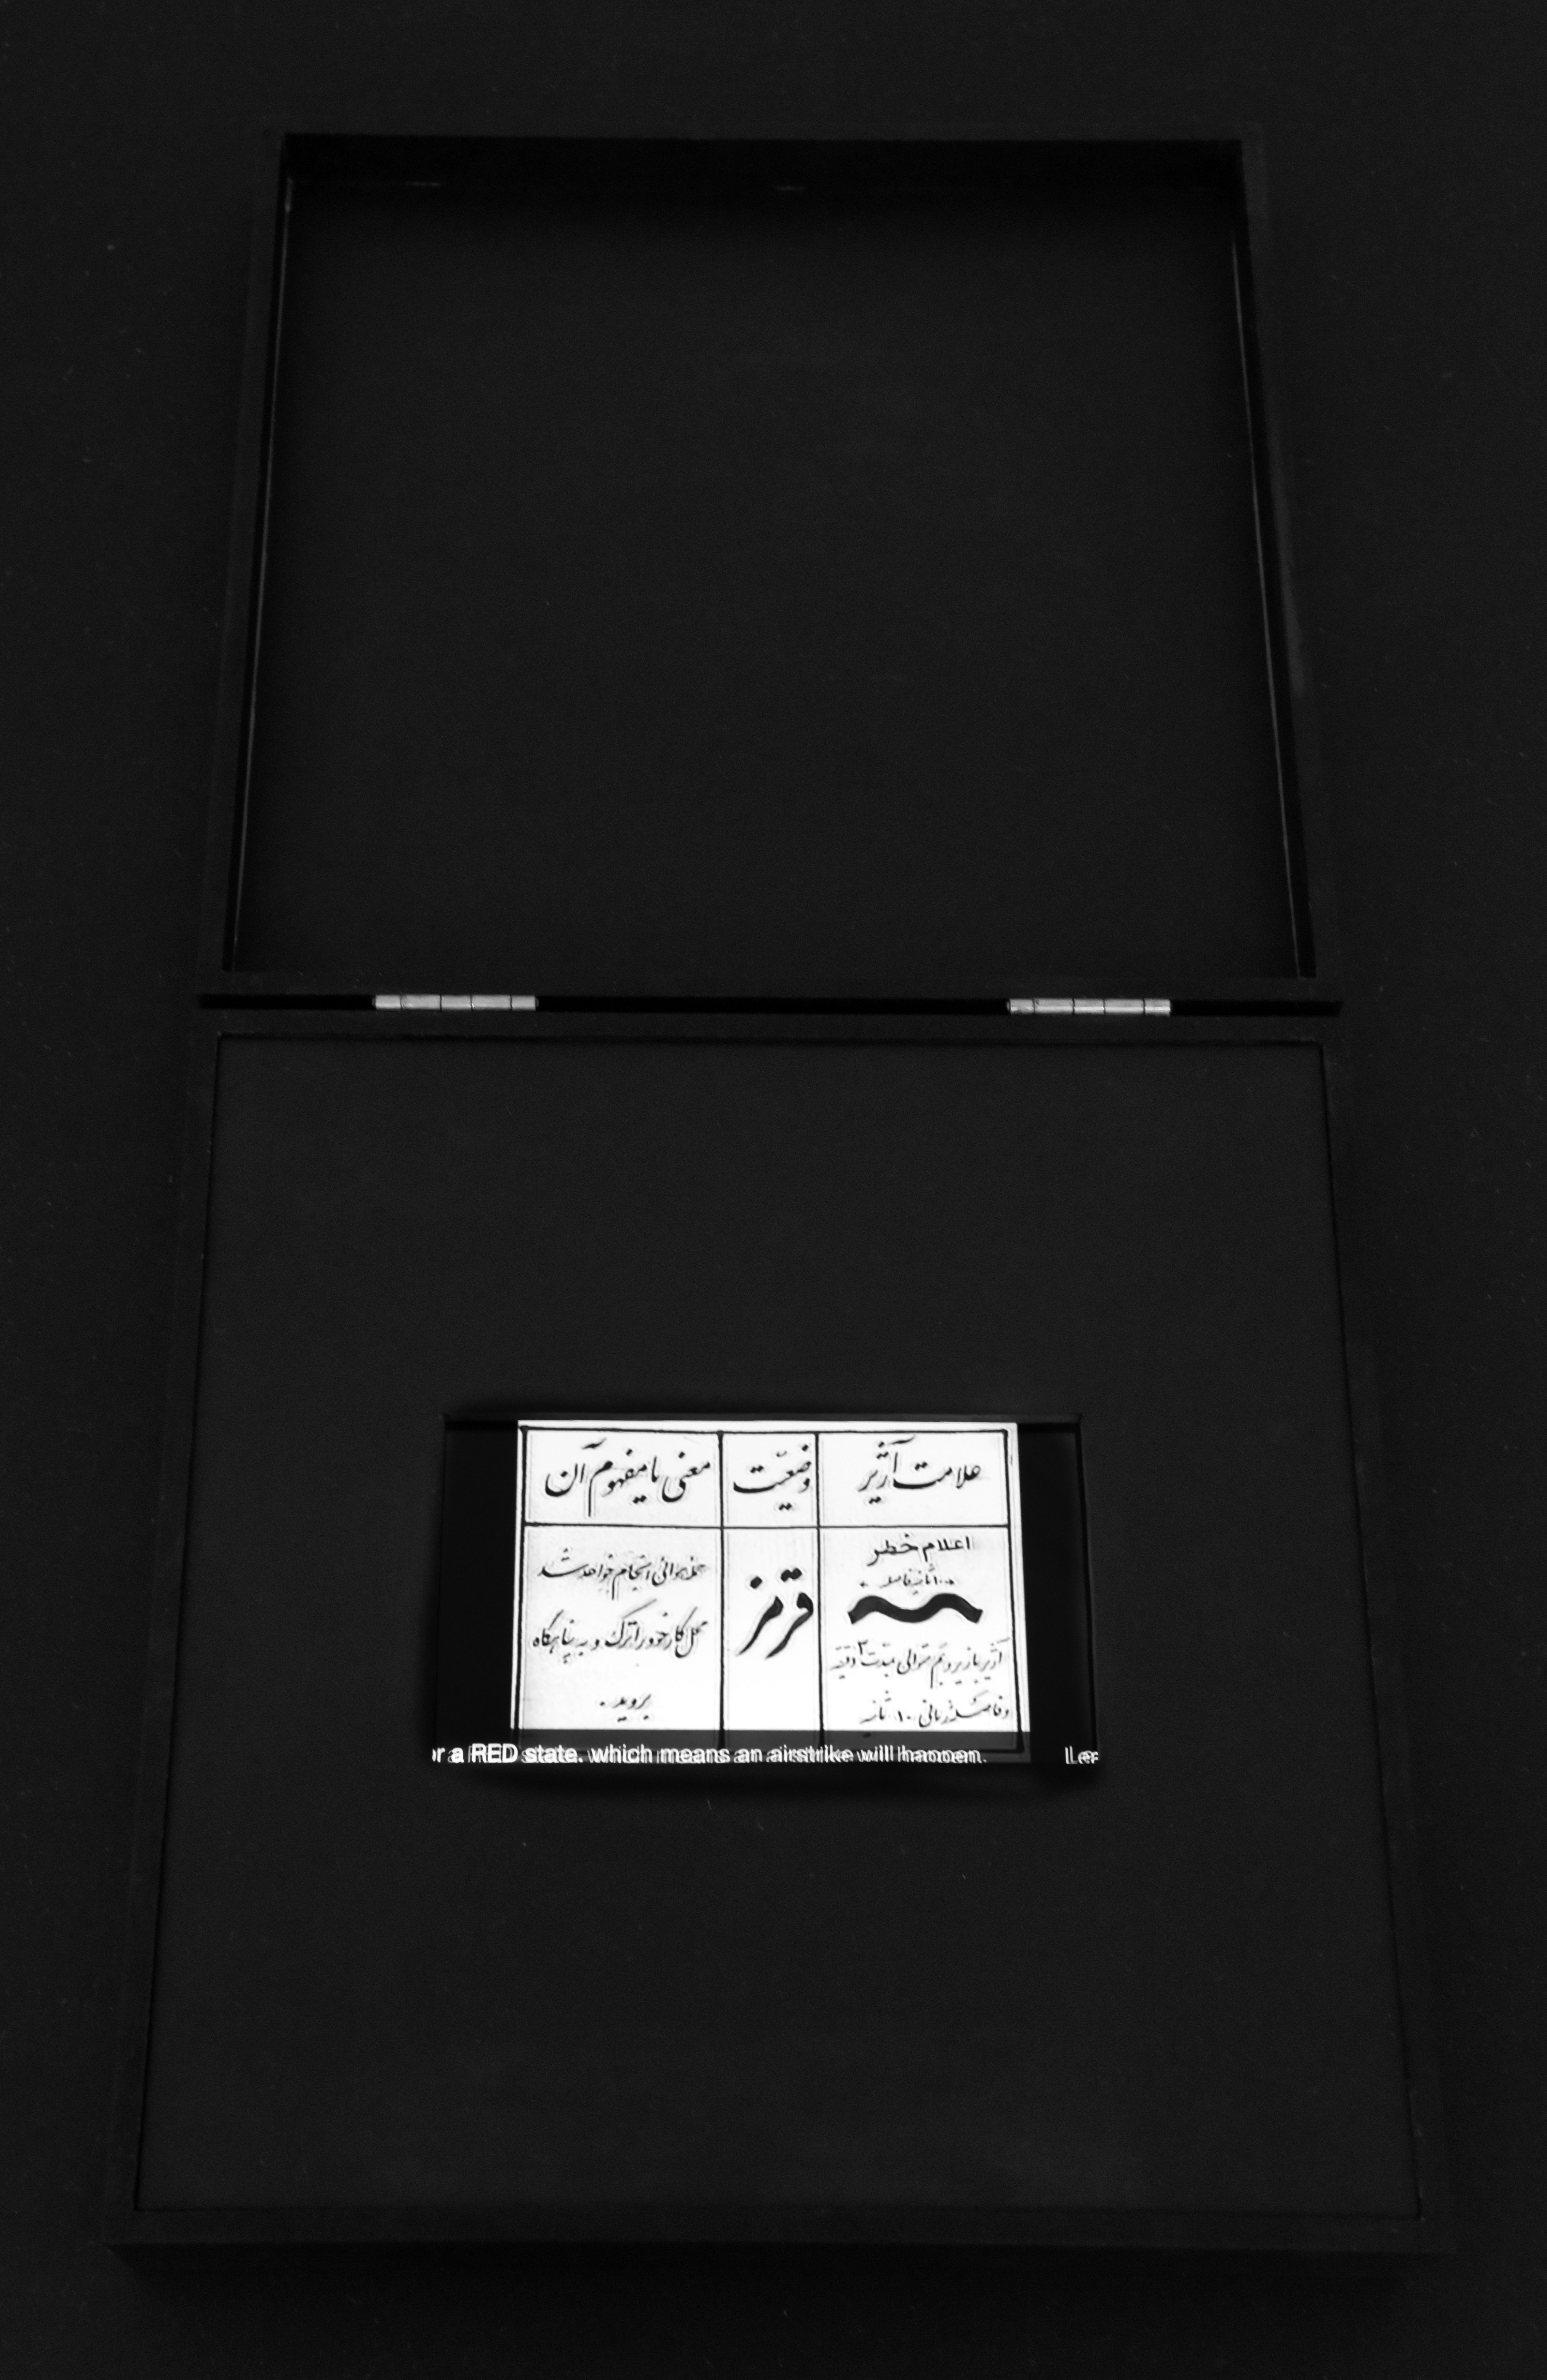 Projet de diplôme master arts visuels option trans motalaei ahmad, exposition intimiste composée de différents objets dans un pièce d'appartement : une valise avec des magazines féminins des années 70 et un écran intégré, et un cofret contenant des images et textes d'archives